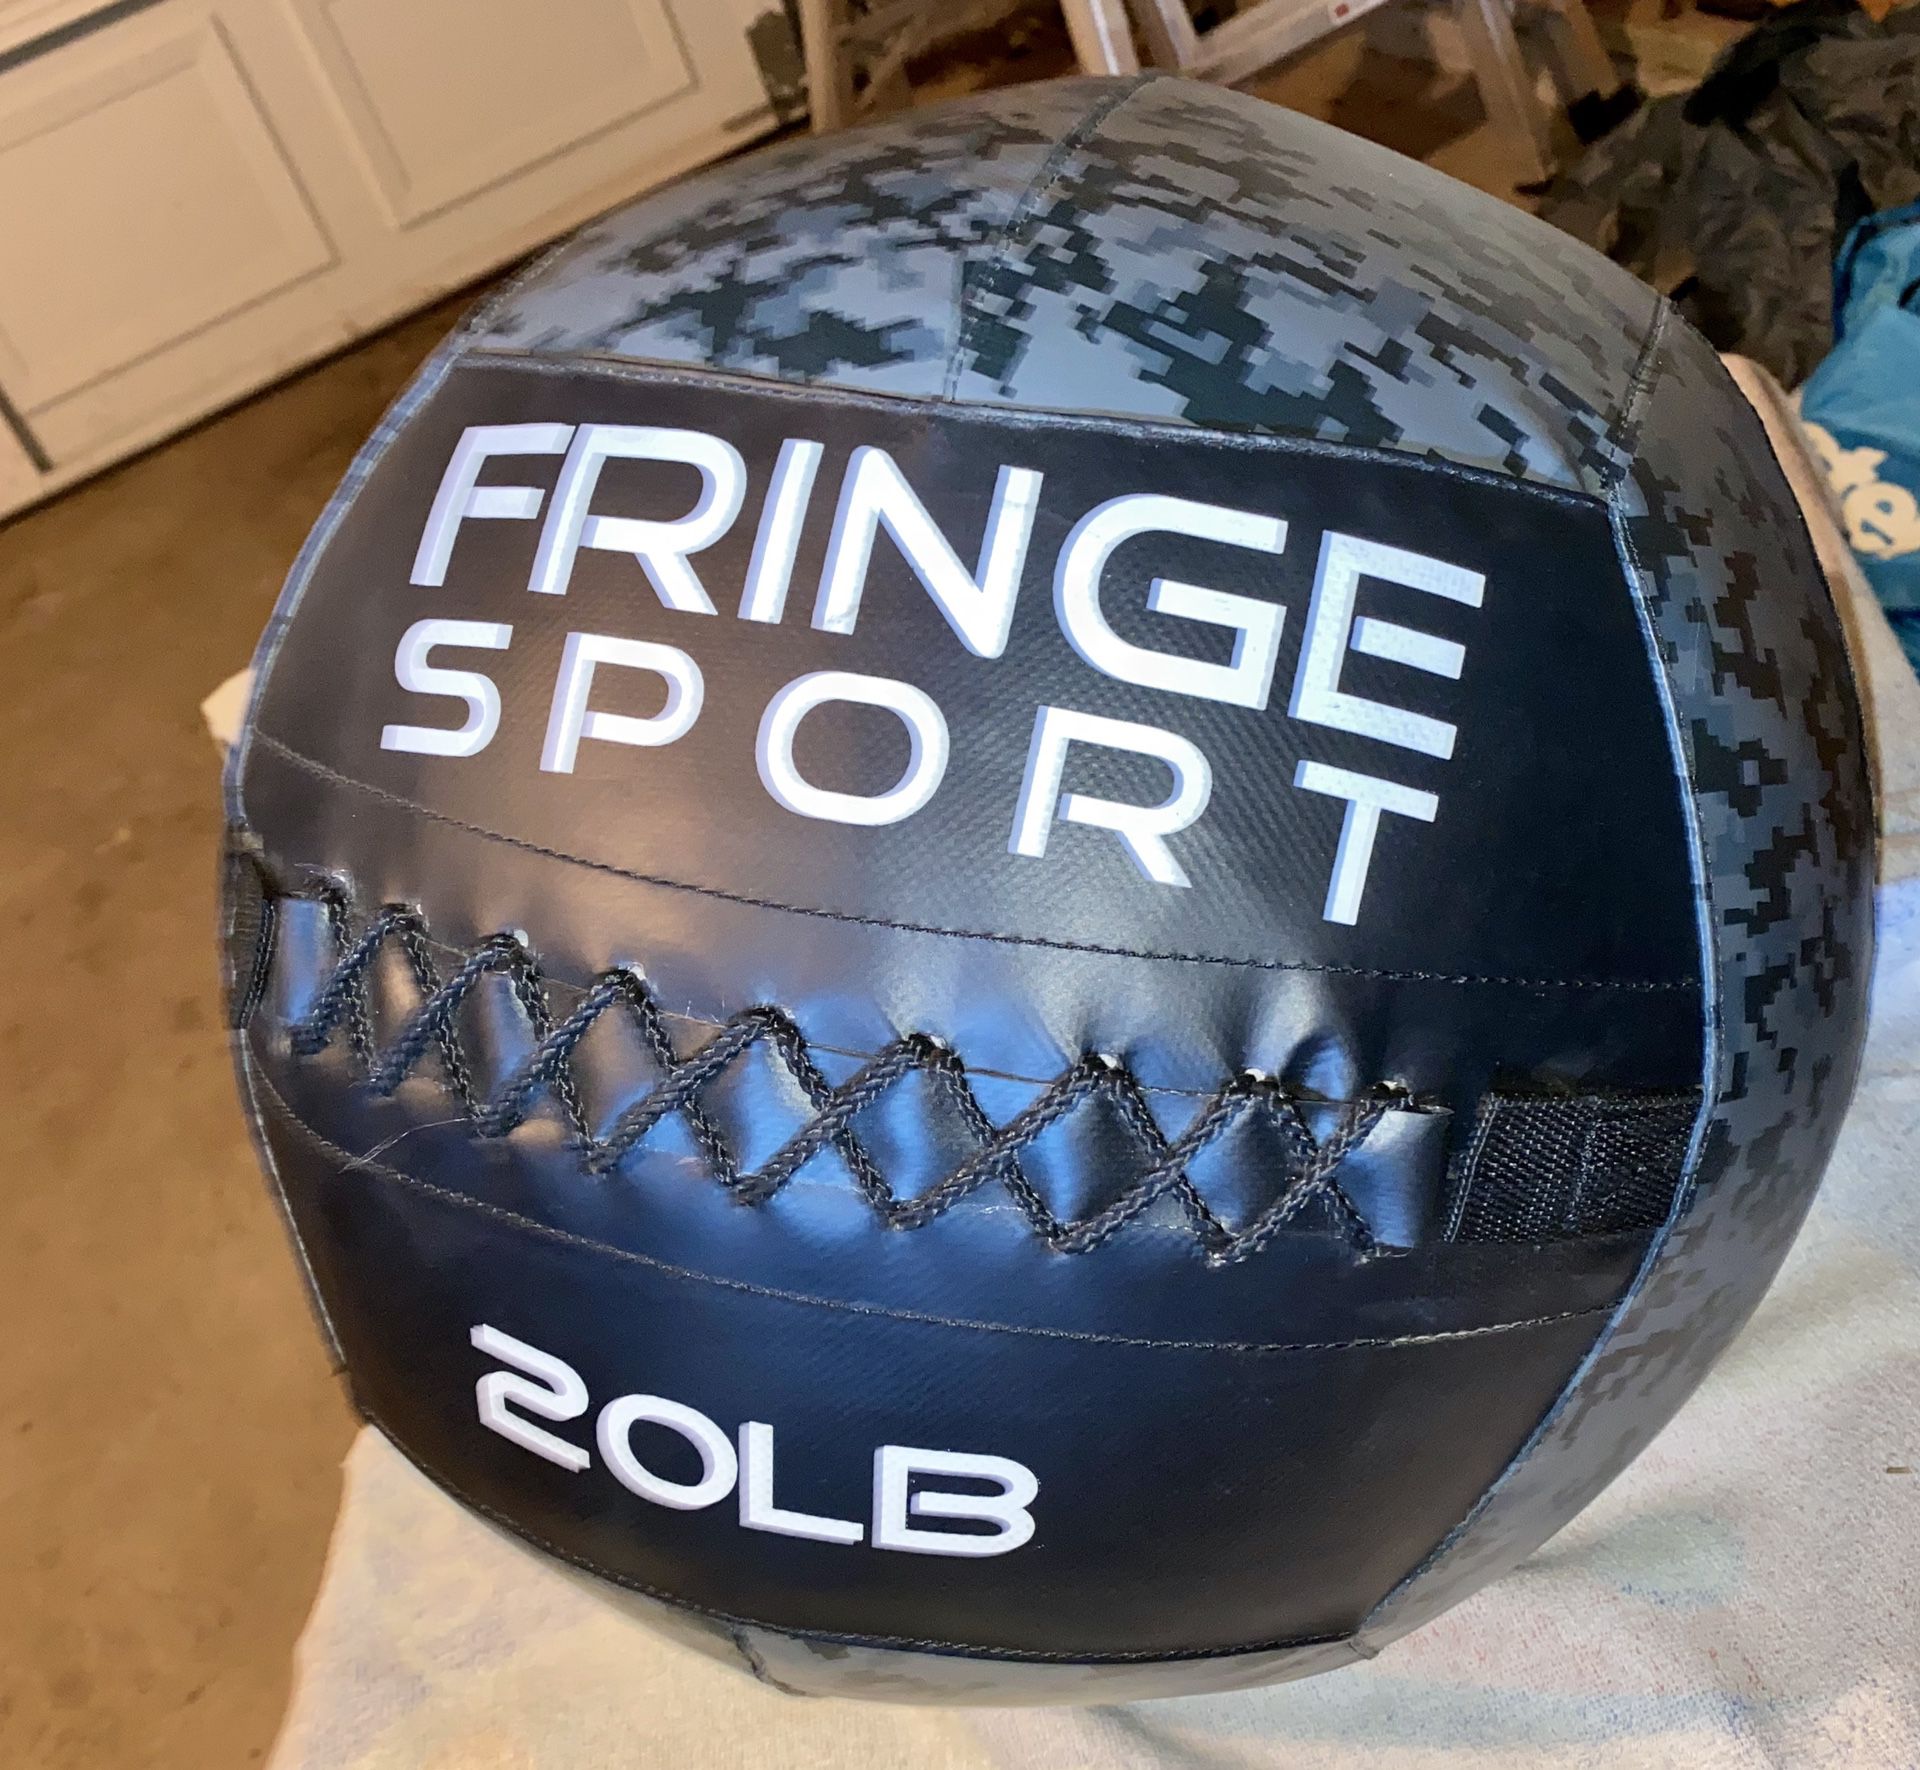 20lb fringe sport medicine ball - workout / gym